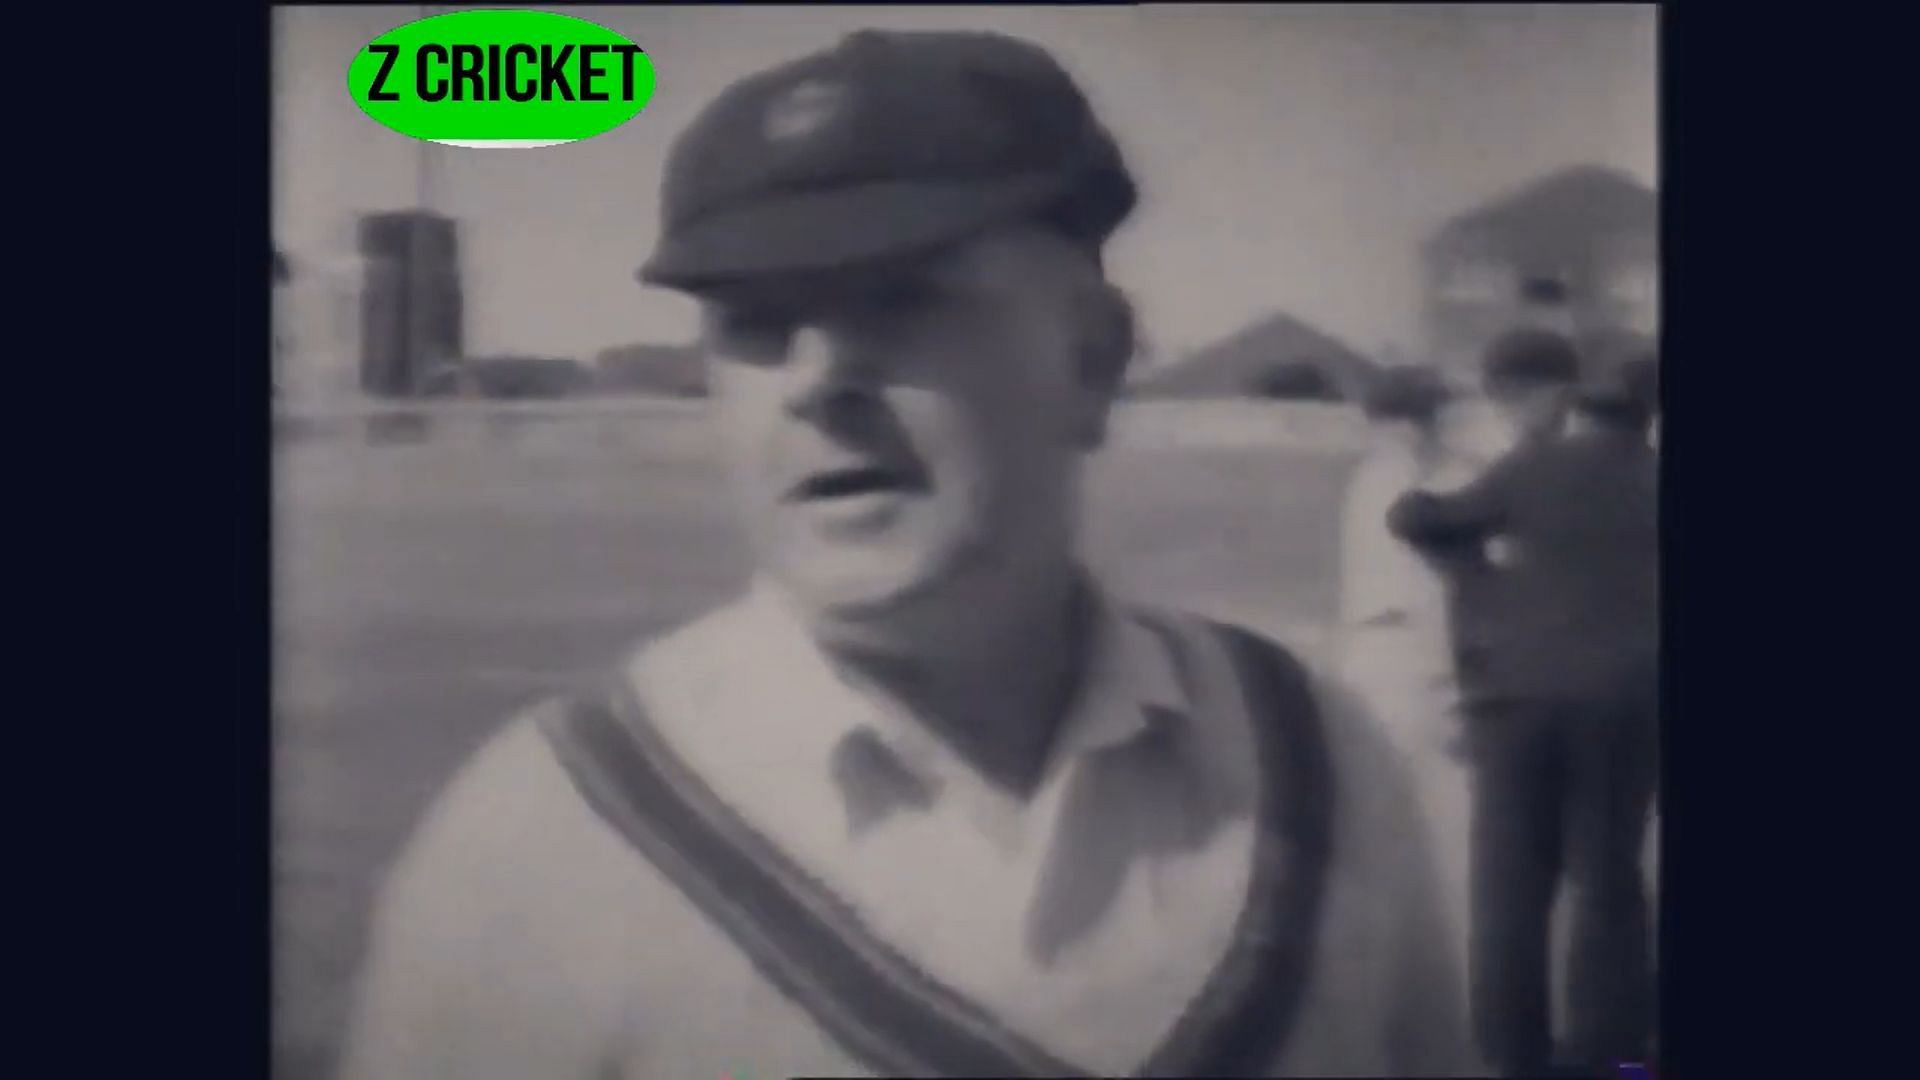 Charles Macartney (Image: YouTube/ Z cricket)